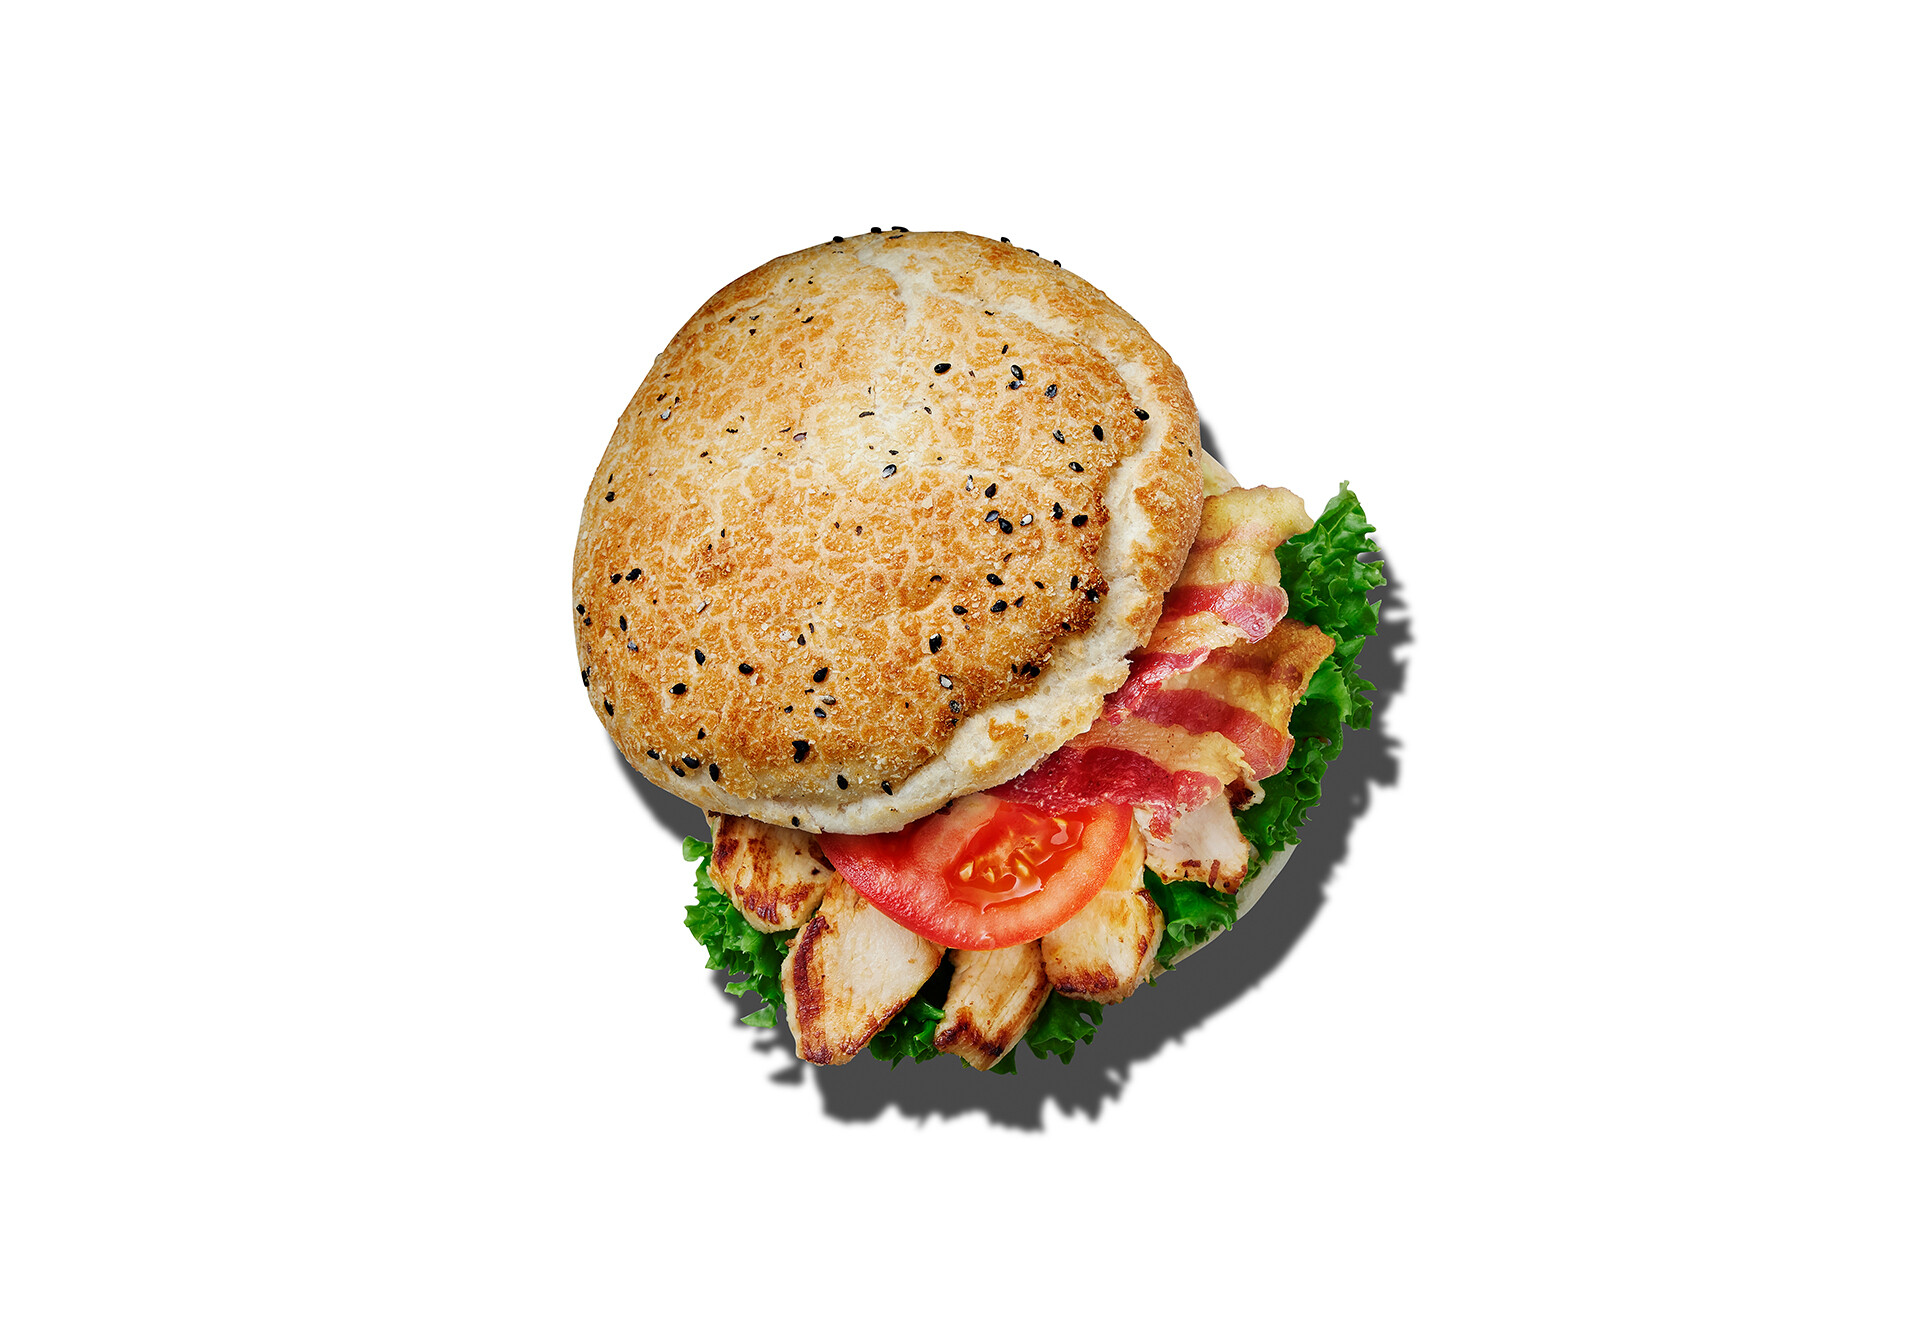 Chicken bacon sandwich